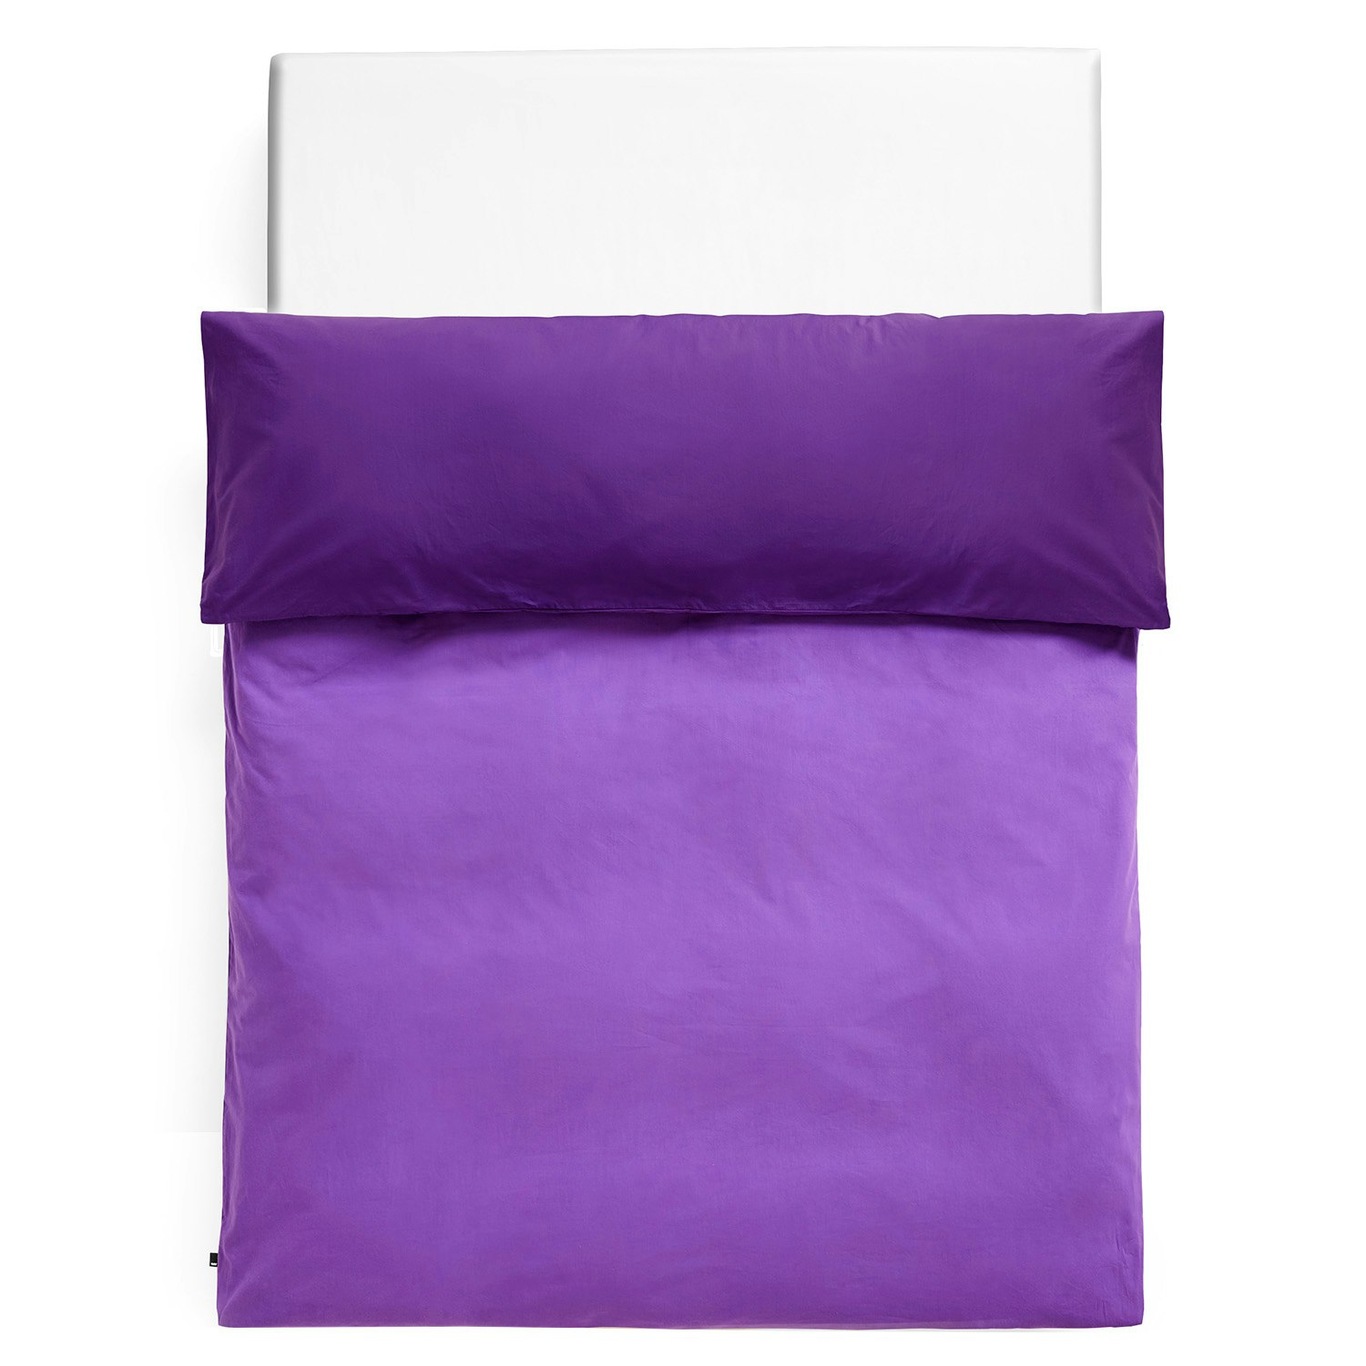 Duo Duvet Cover 220x220 cm, Vivid Purple